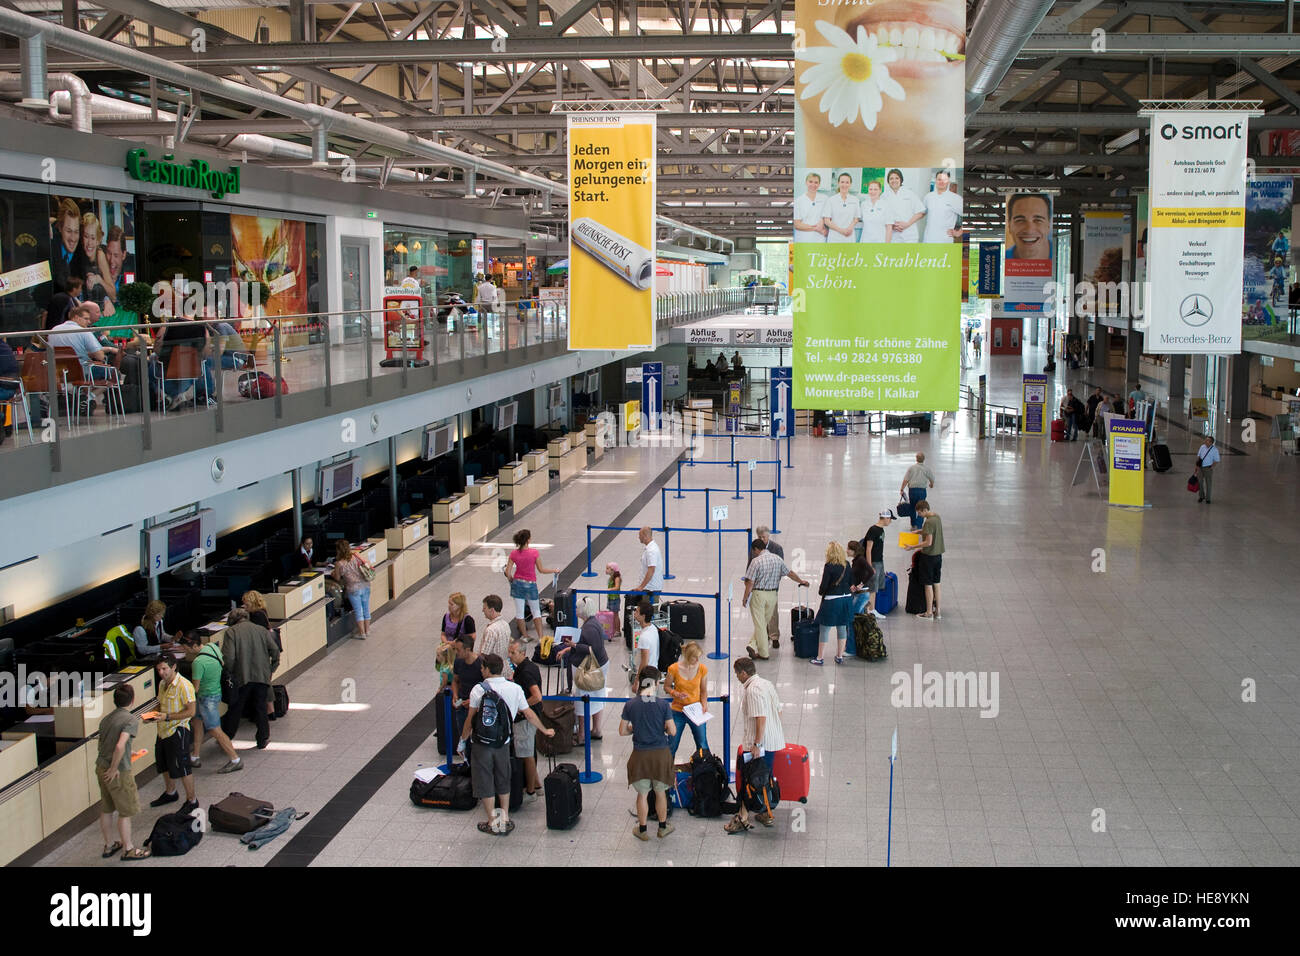 L'Europa, in Germania, in Renania settentrionale-Vestfalia, Regione del Basso Reno, Aeroporto Weeze, Terminale. Foto Stock